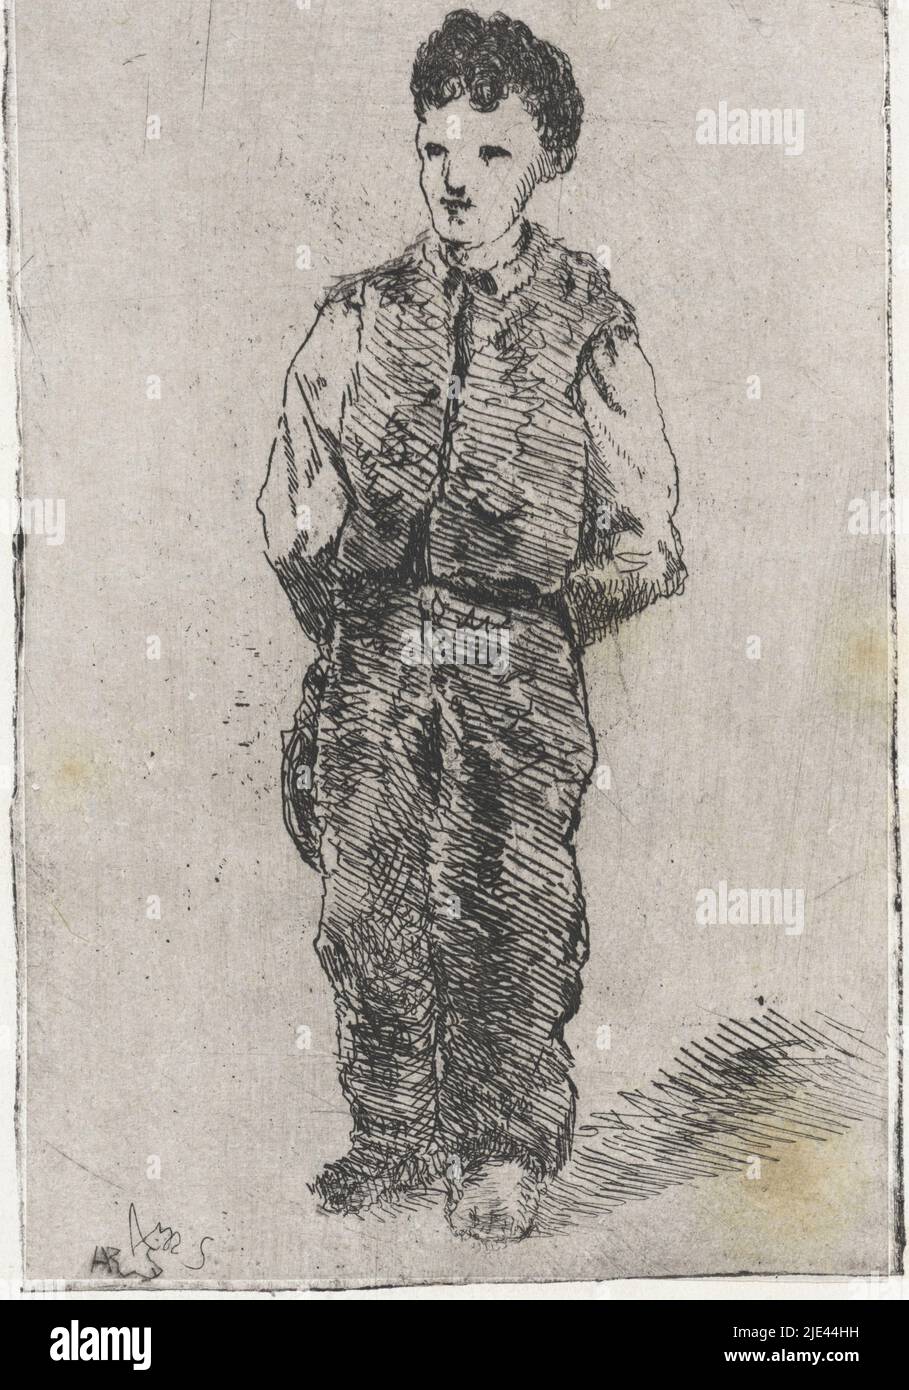 Jeune homme en combinaison, Arnoud Schaepkens, 1831 - 1904, imprimerie : Arnoud Schaepkens, (mentionné sur l'objet), 1831 - 1904, papier, gravure, pointe sèche, h 142 mm × l 90 mm Banque D'Images